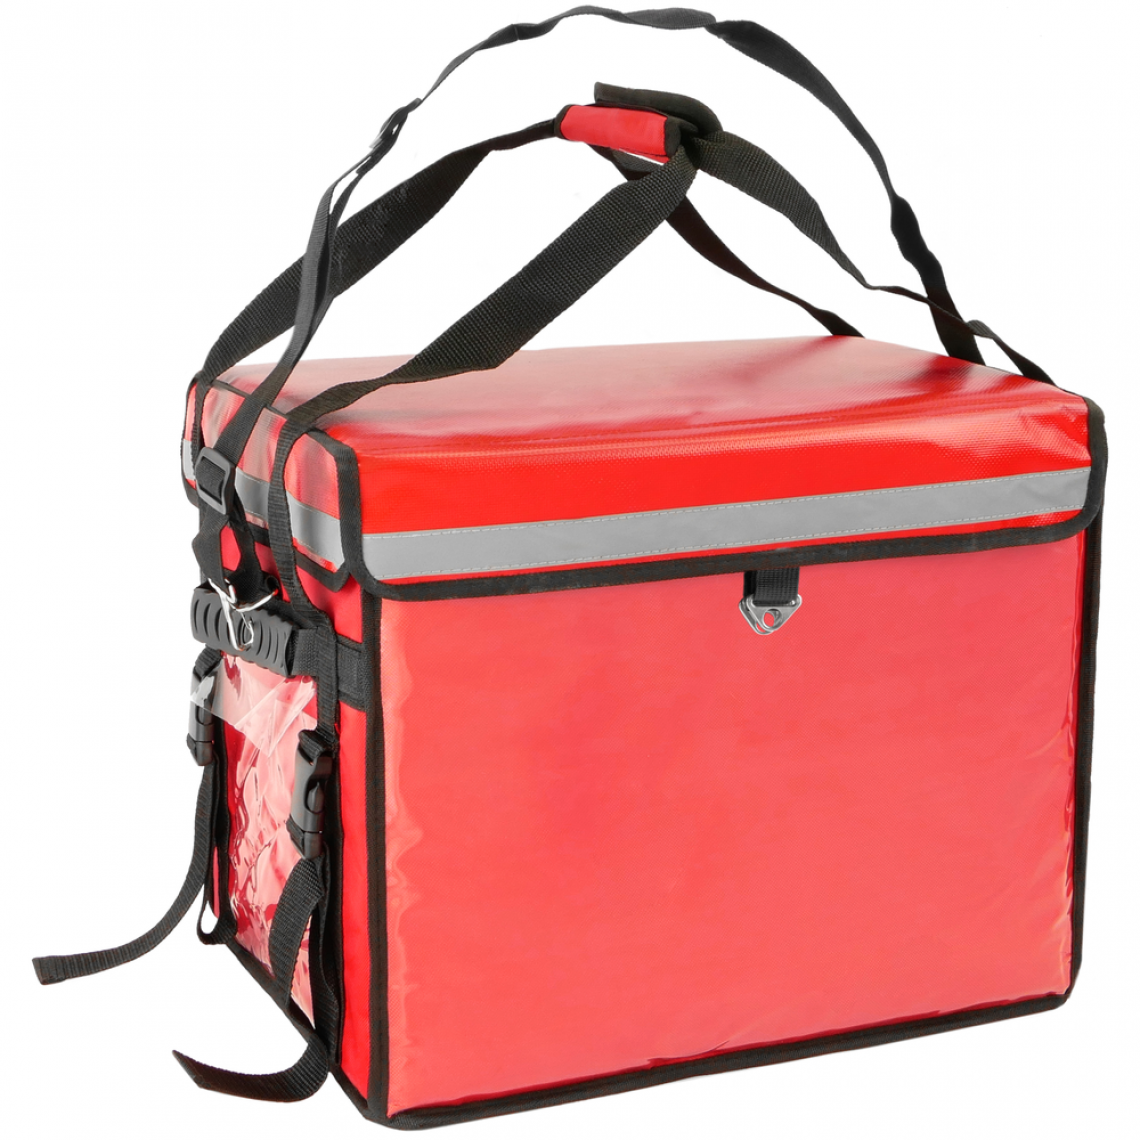 Citybag - Sac à dos isotherme 45 x 35 x 33 cm rouge pour les plats cuisinés et la livraison de commandes alimentaires - Cuisine d'extérieur